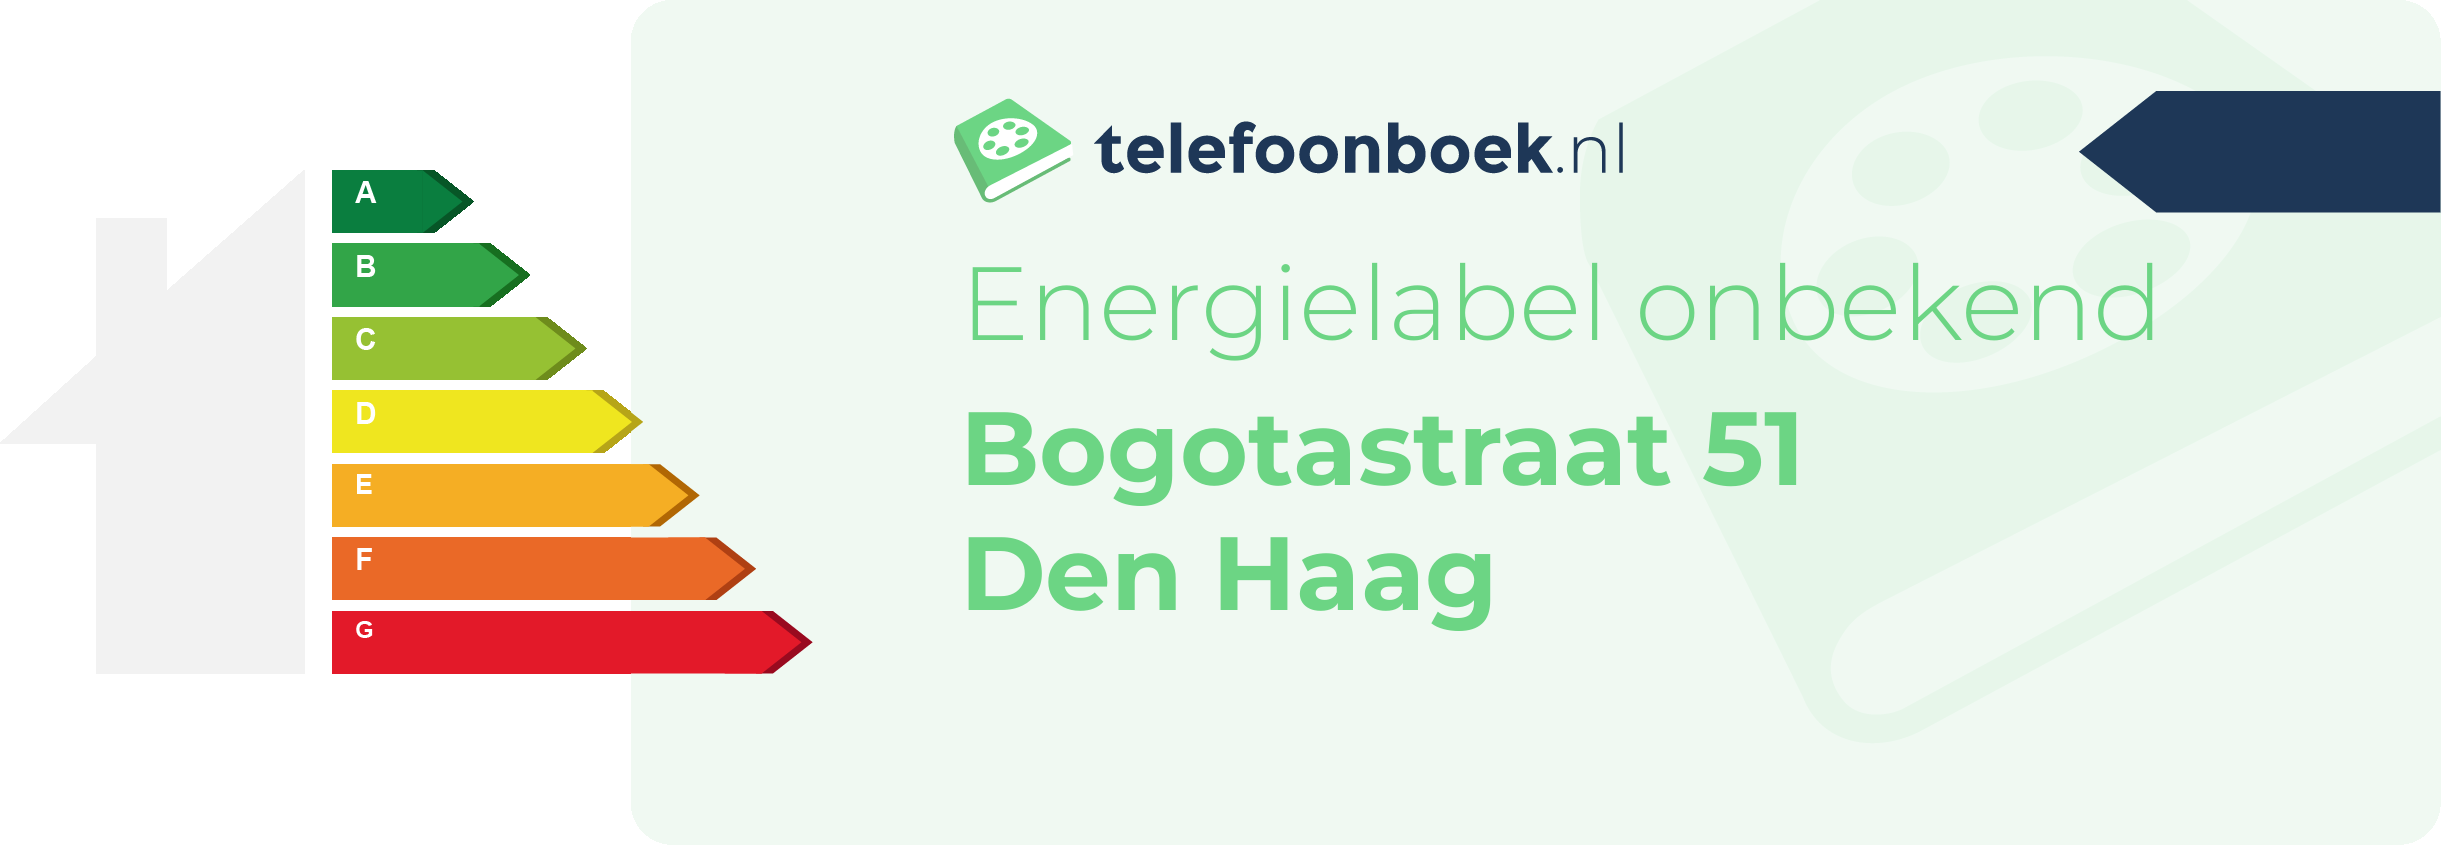 Energielabel Bogotastraat 51 Den Haag